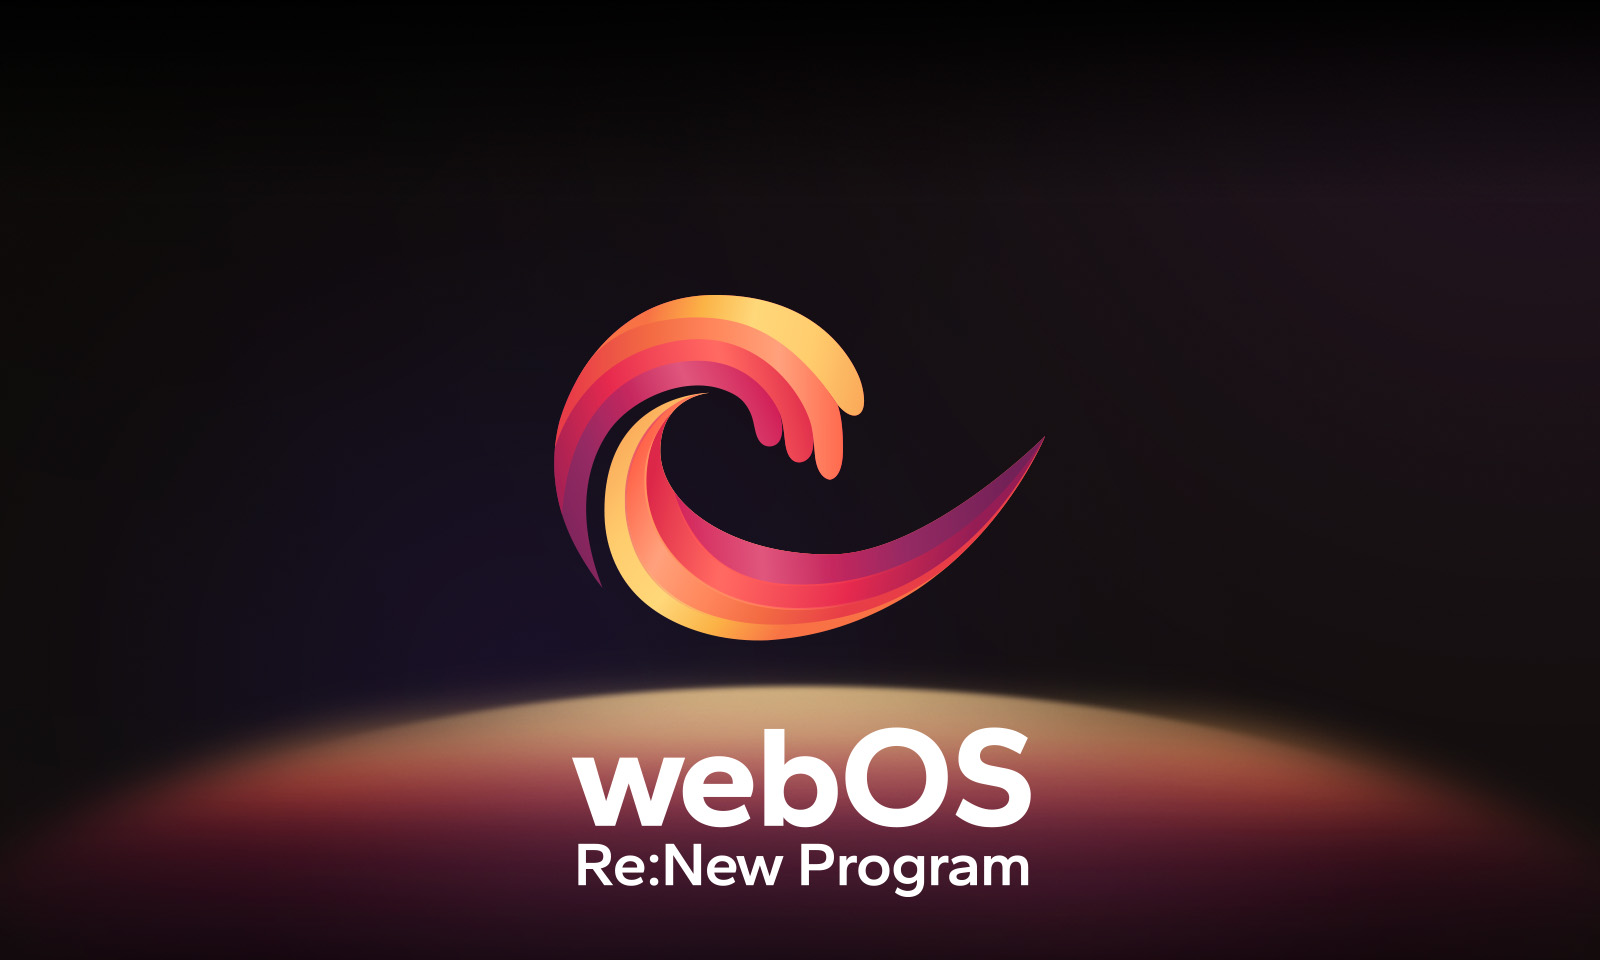 يتحرك شعار webOS في المنتصف على خلفية بلون أسود، وتُضاء المساحة أدناه بألوان الشعار الأحمر، والبرتقالي، والأصفر. وتظهر الكلمات "webOS Re:New Program" أسفل الشعار.